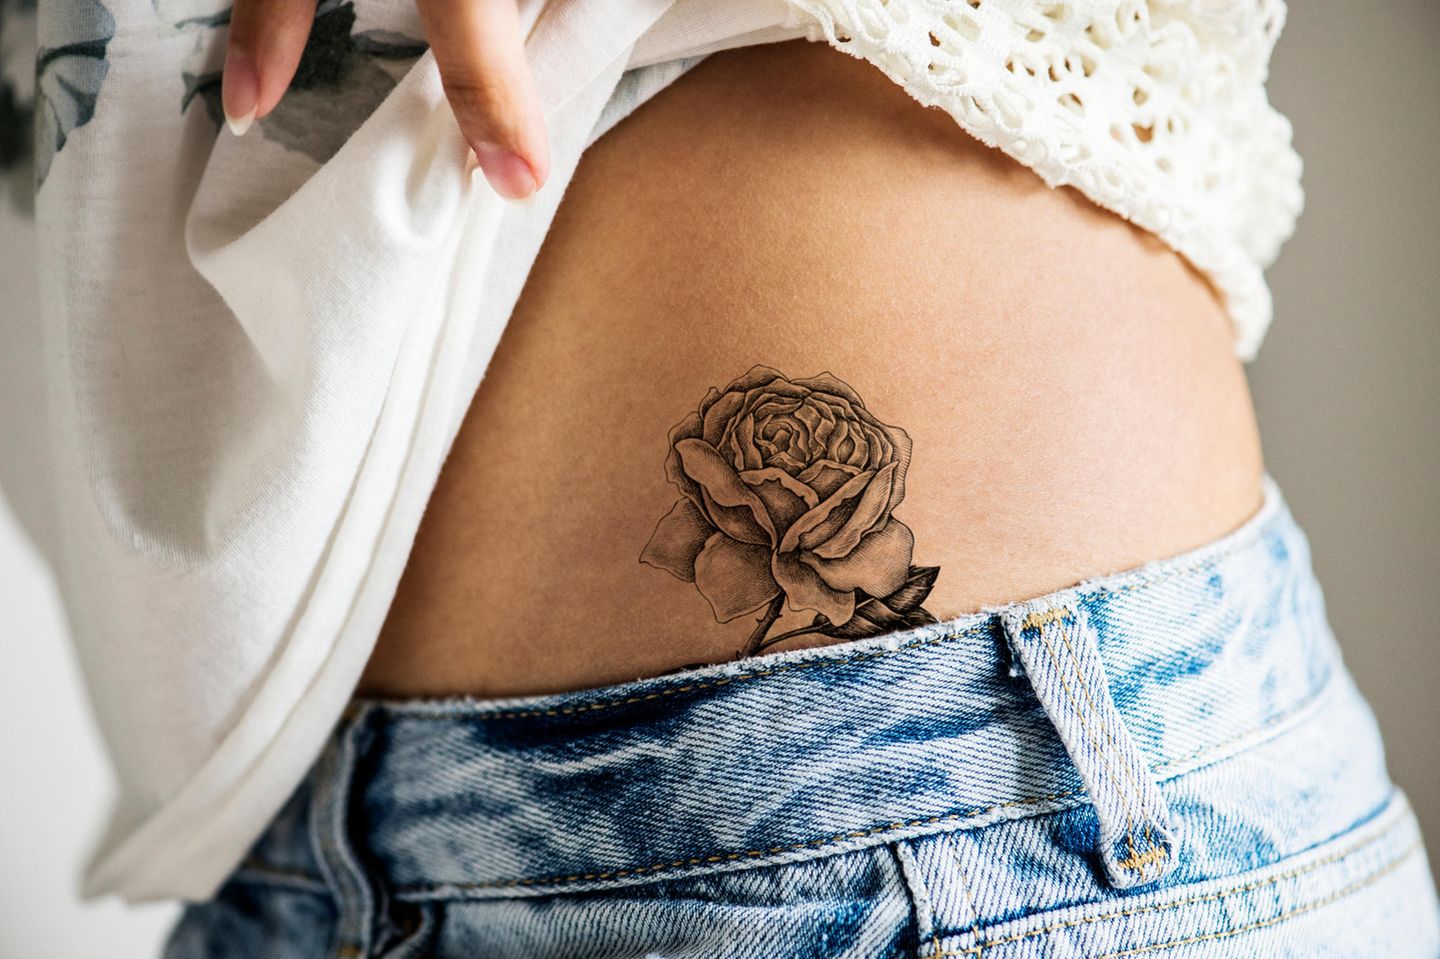 An frauen tattoos Ideen Tattoos